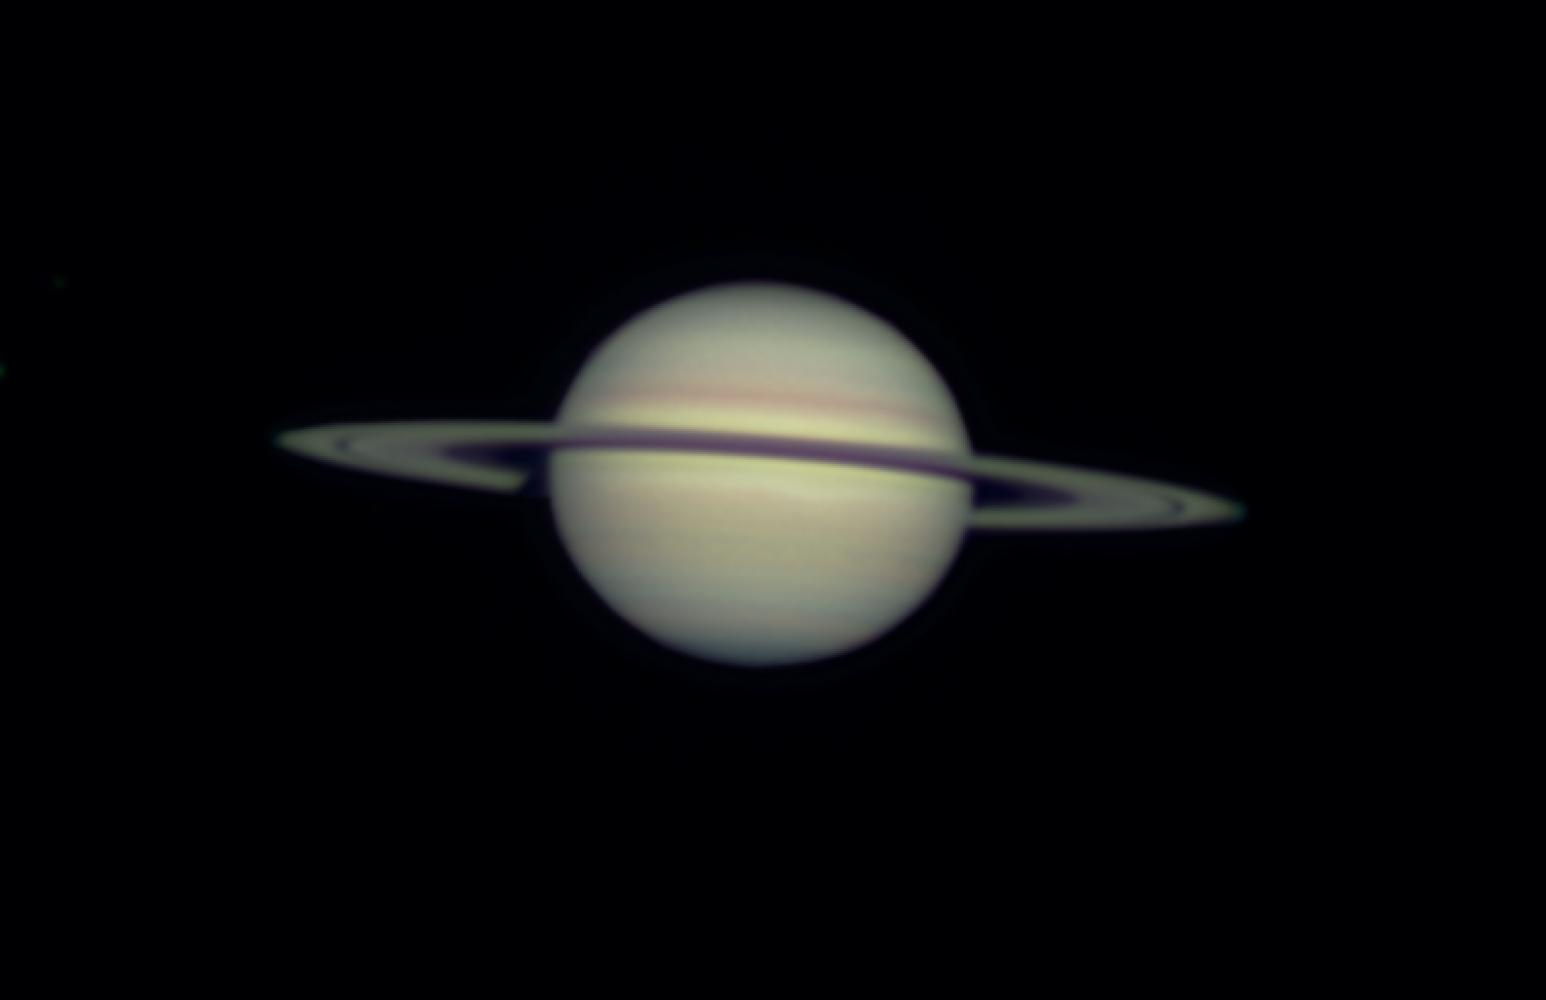 Saturn - 01-28-10